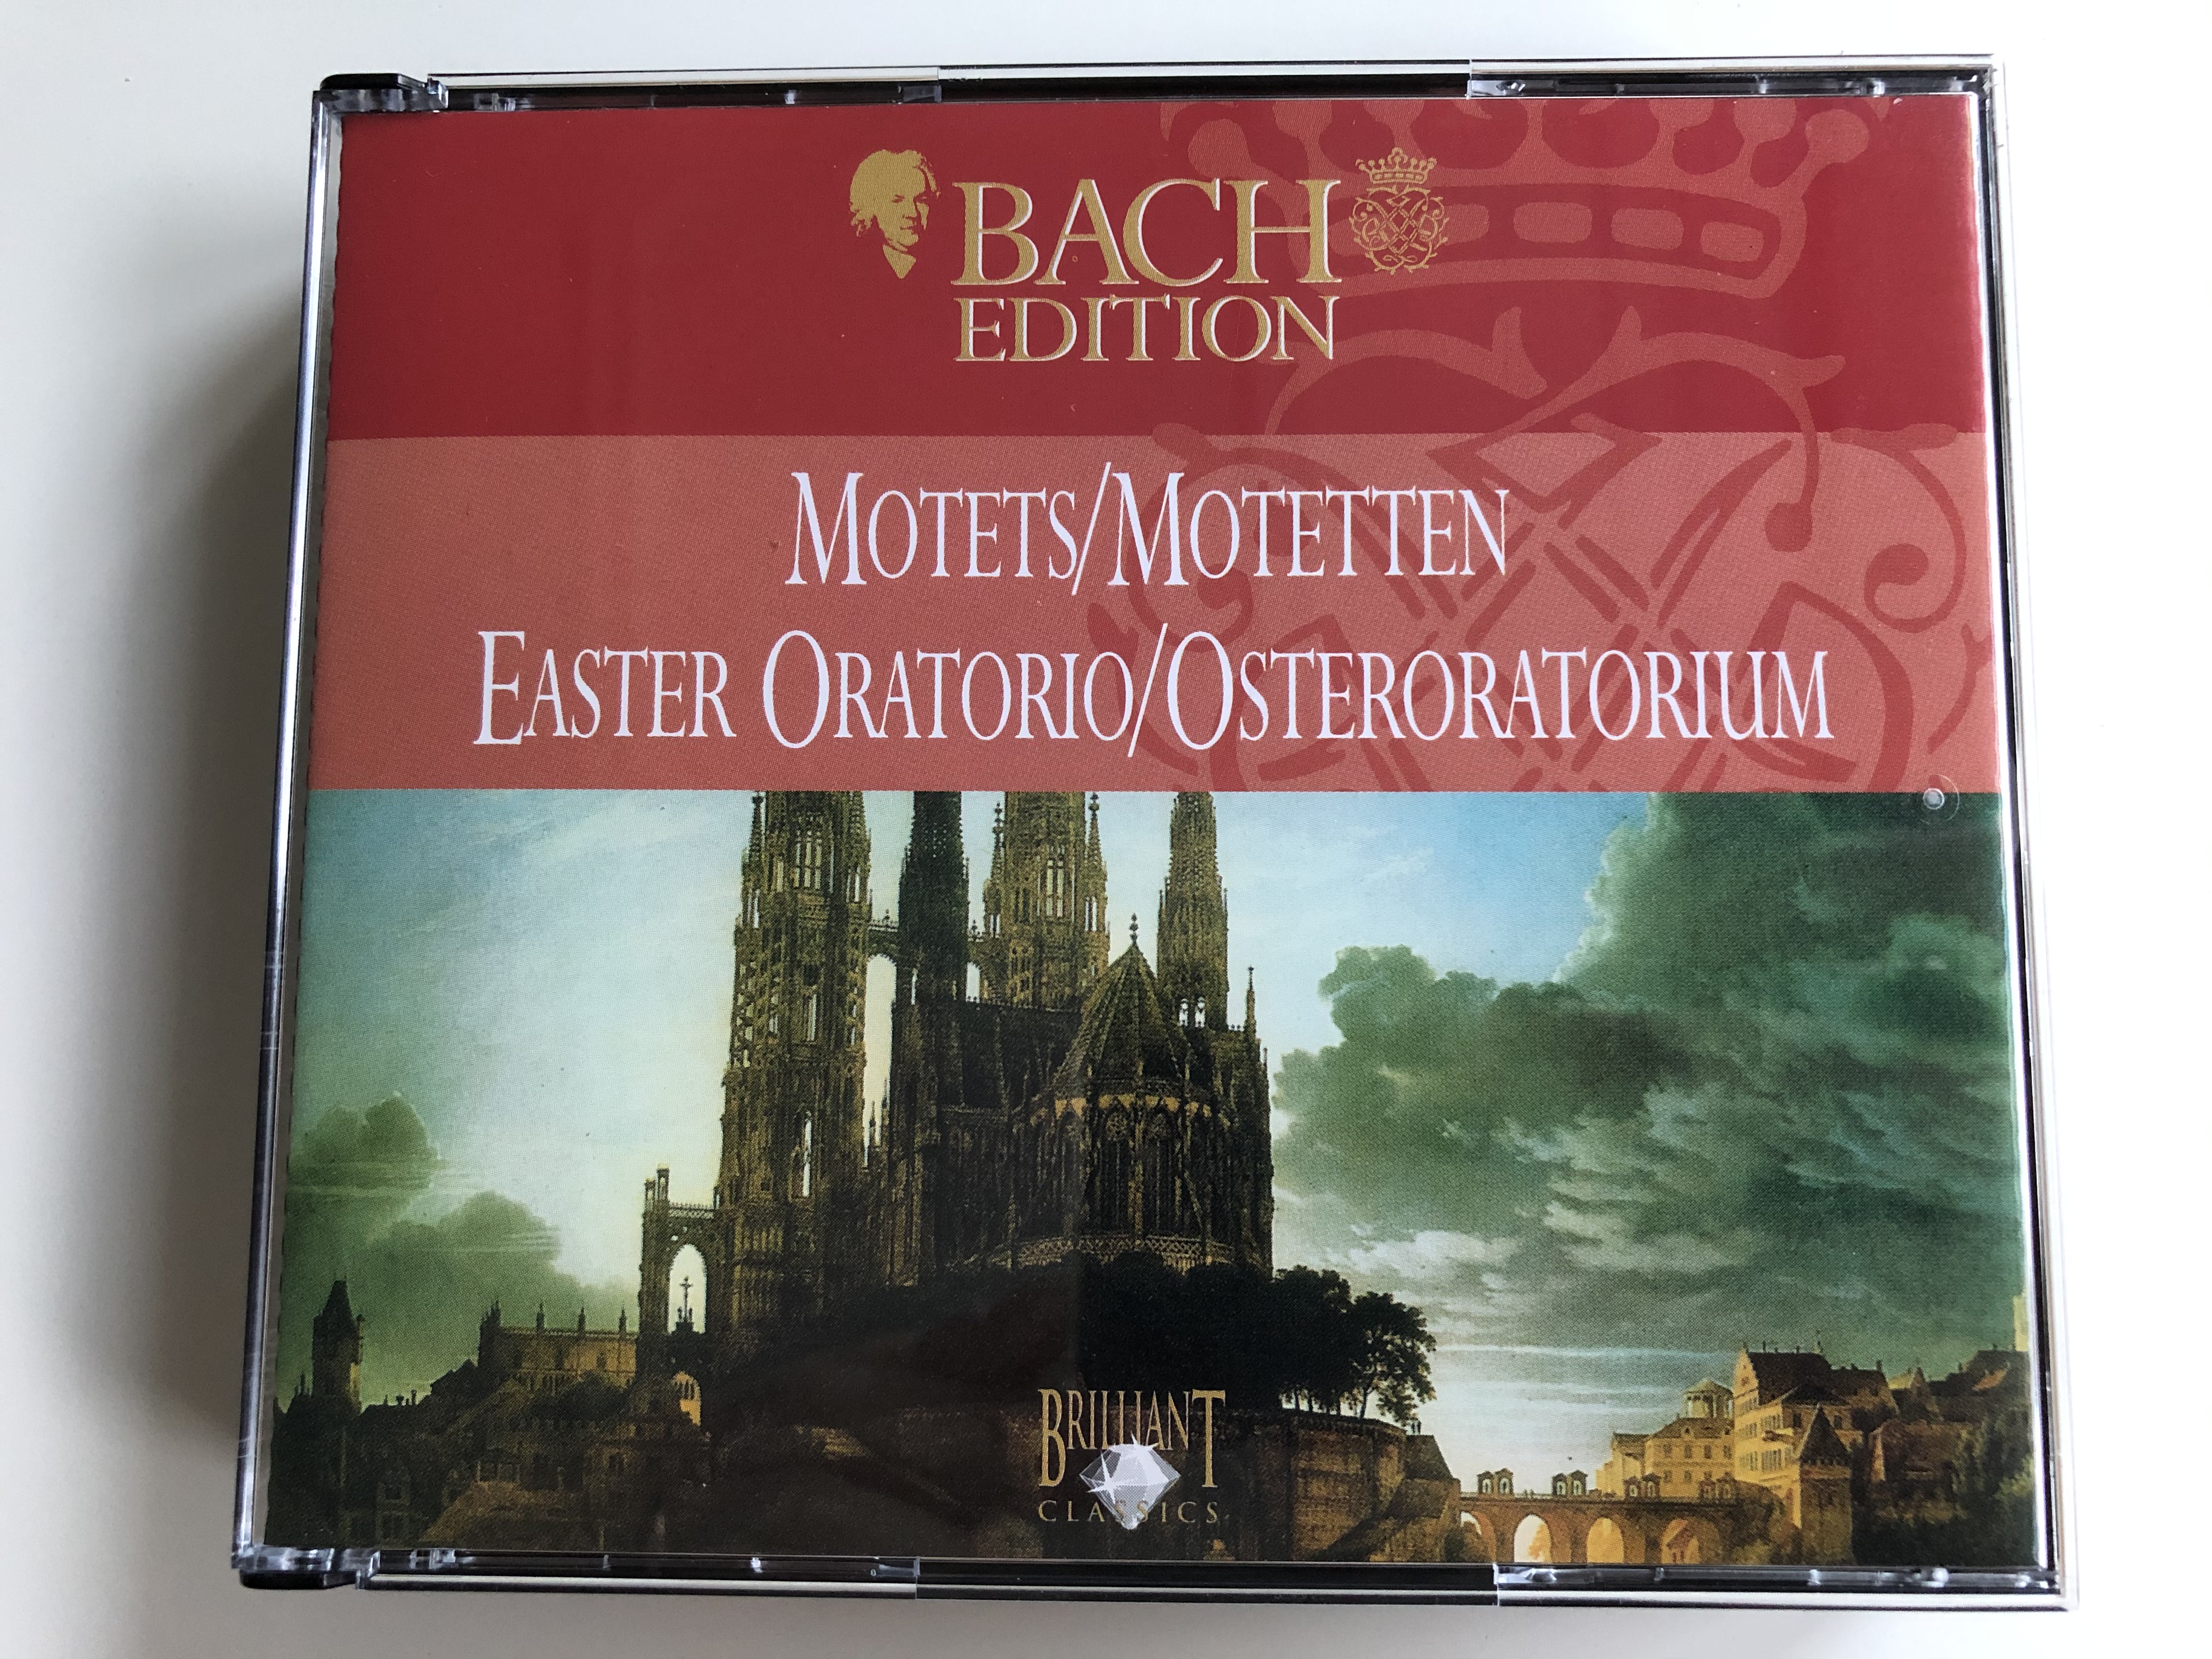 bach-edition-motets-motetten-easter-oratorio-osteroratorium-brilliant-classics-2x-audio-cd-1999-993617-993618-1-.jpg